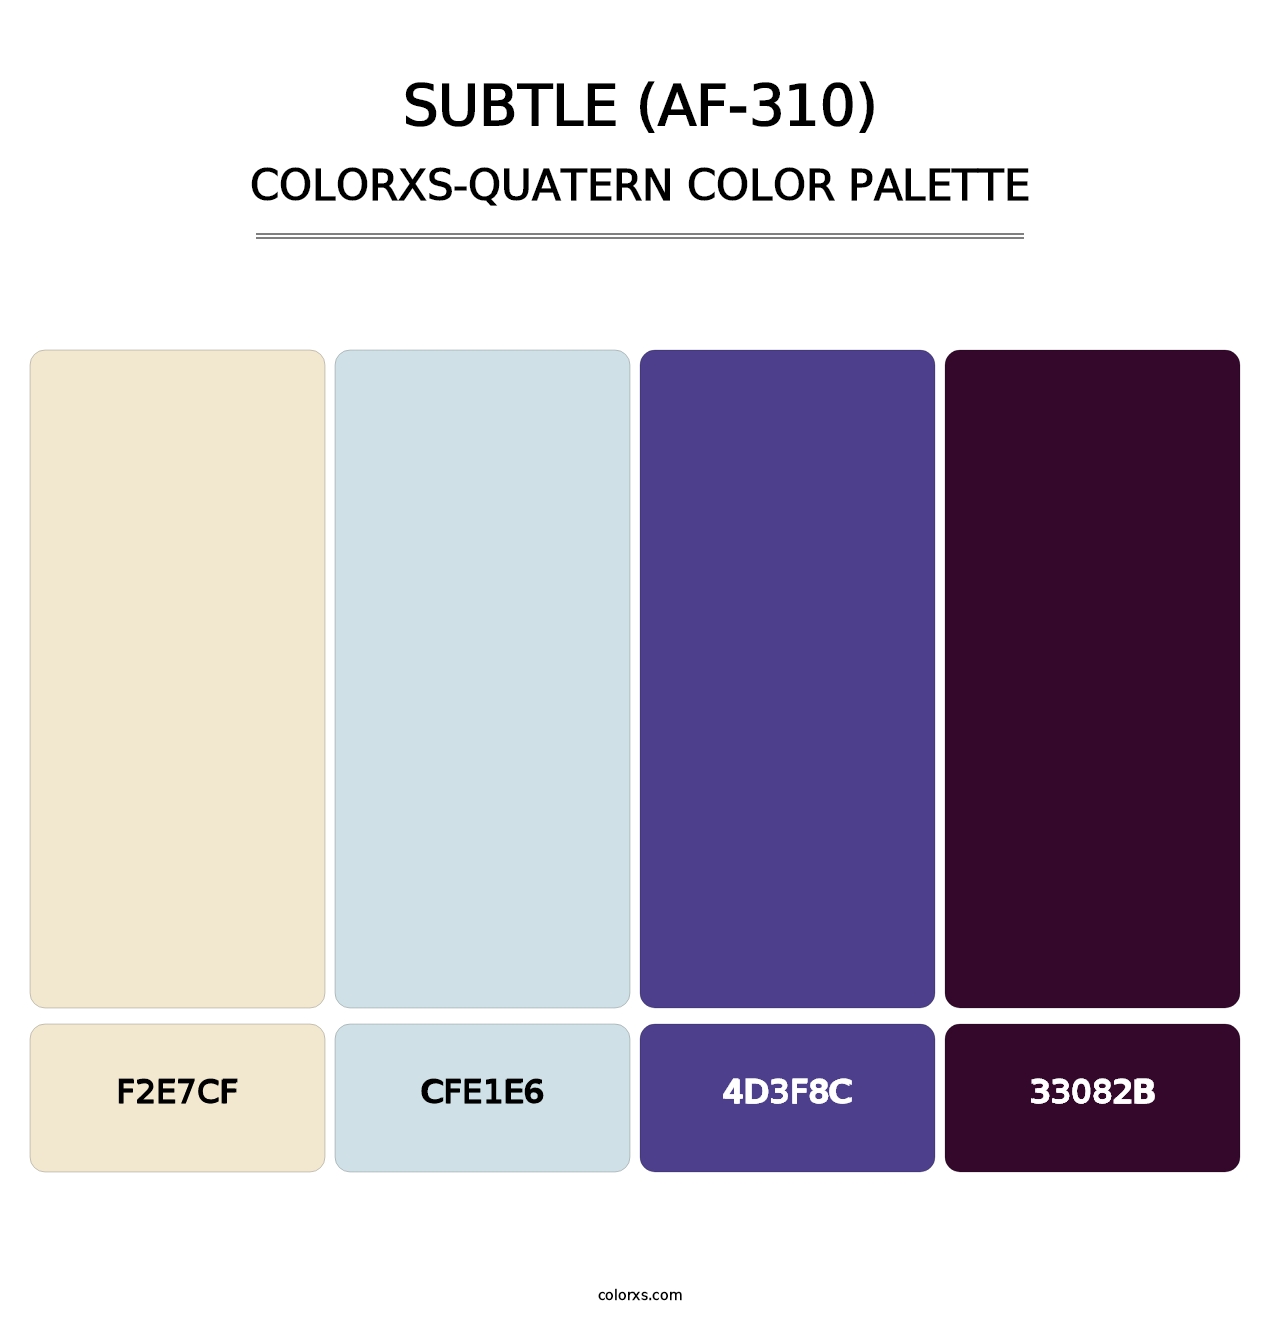 Subtle (AF-310) - Colorxs Quatern Palette